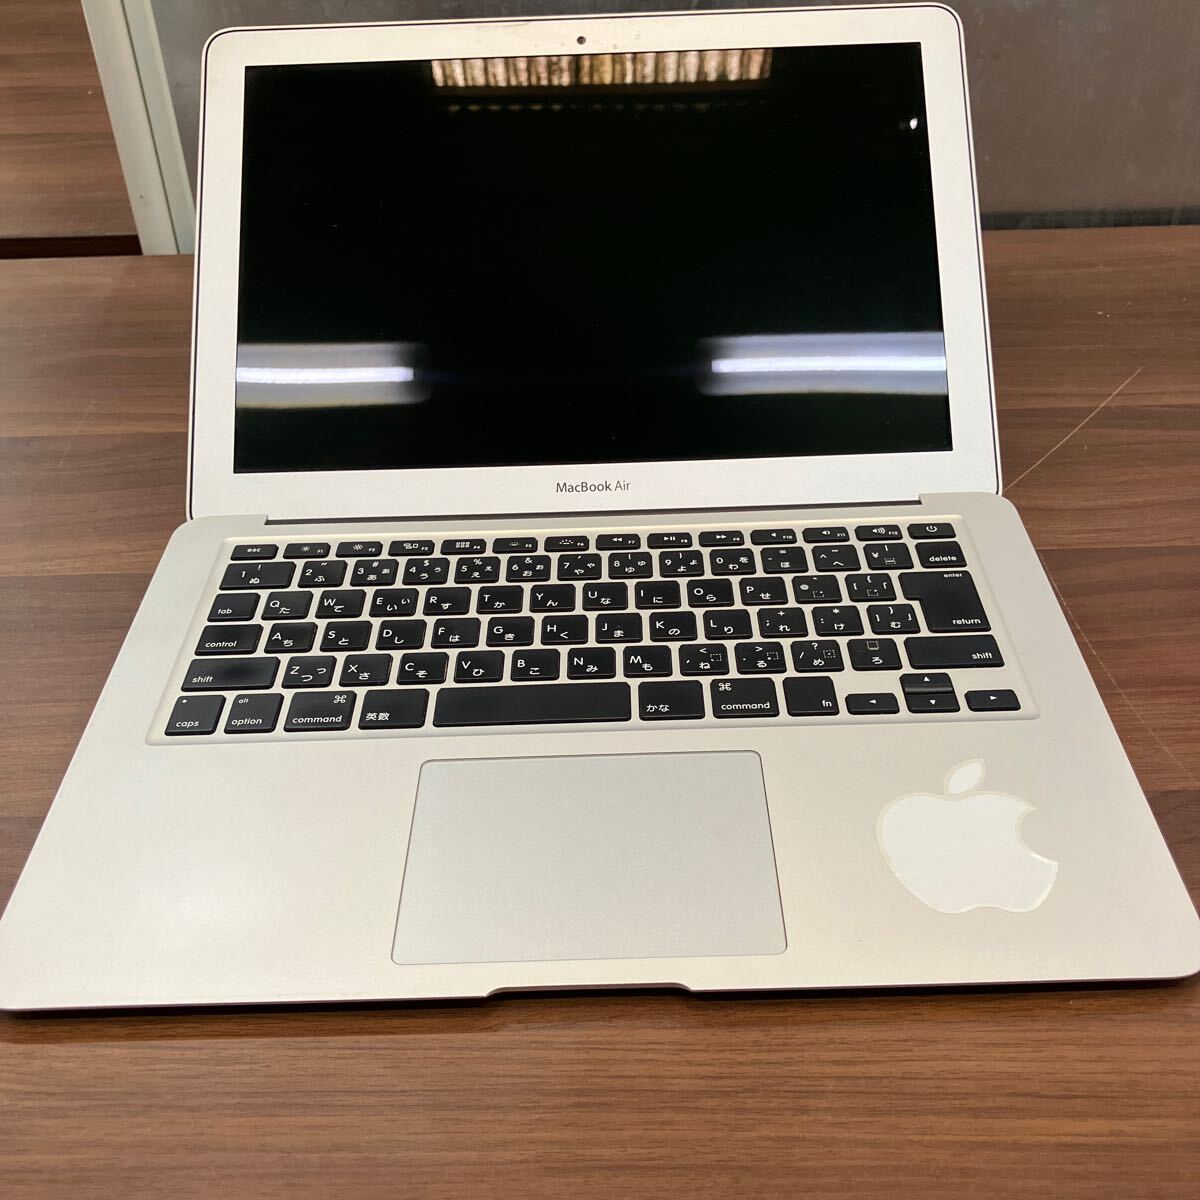 Apple MacBook AIR модель A1466 корпус только Apple ноутбук MacBook Note PC Apple товар персональный компьютер для бытового использования бытовая техника Air